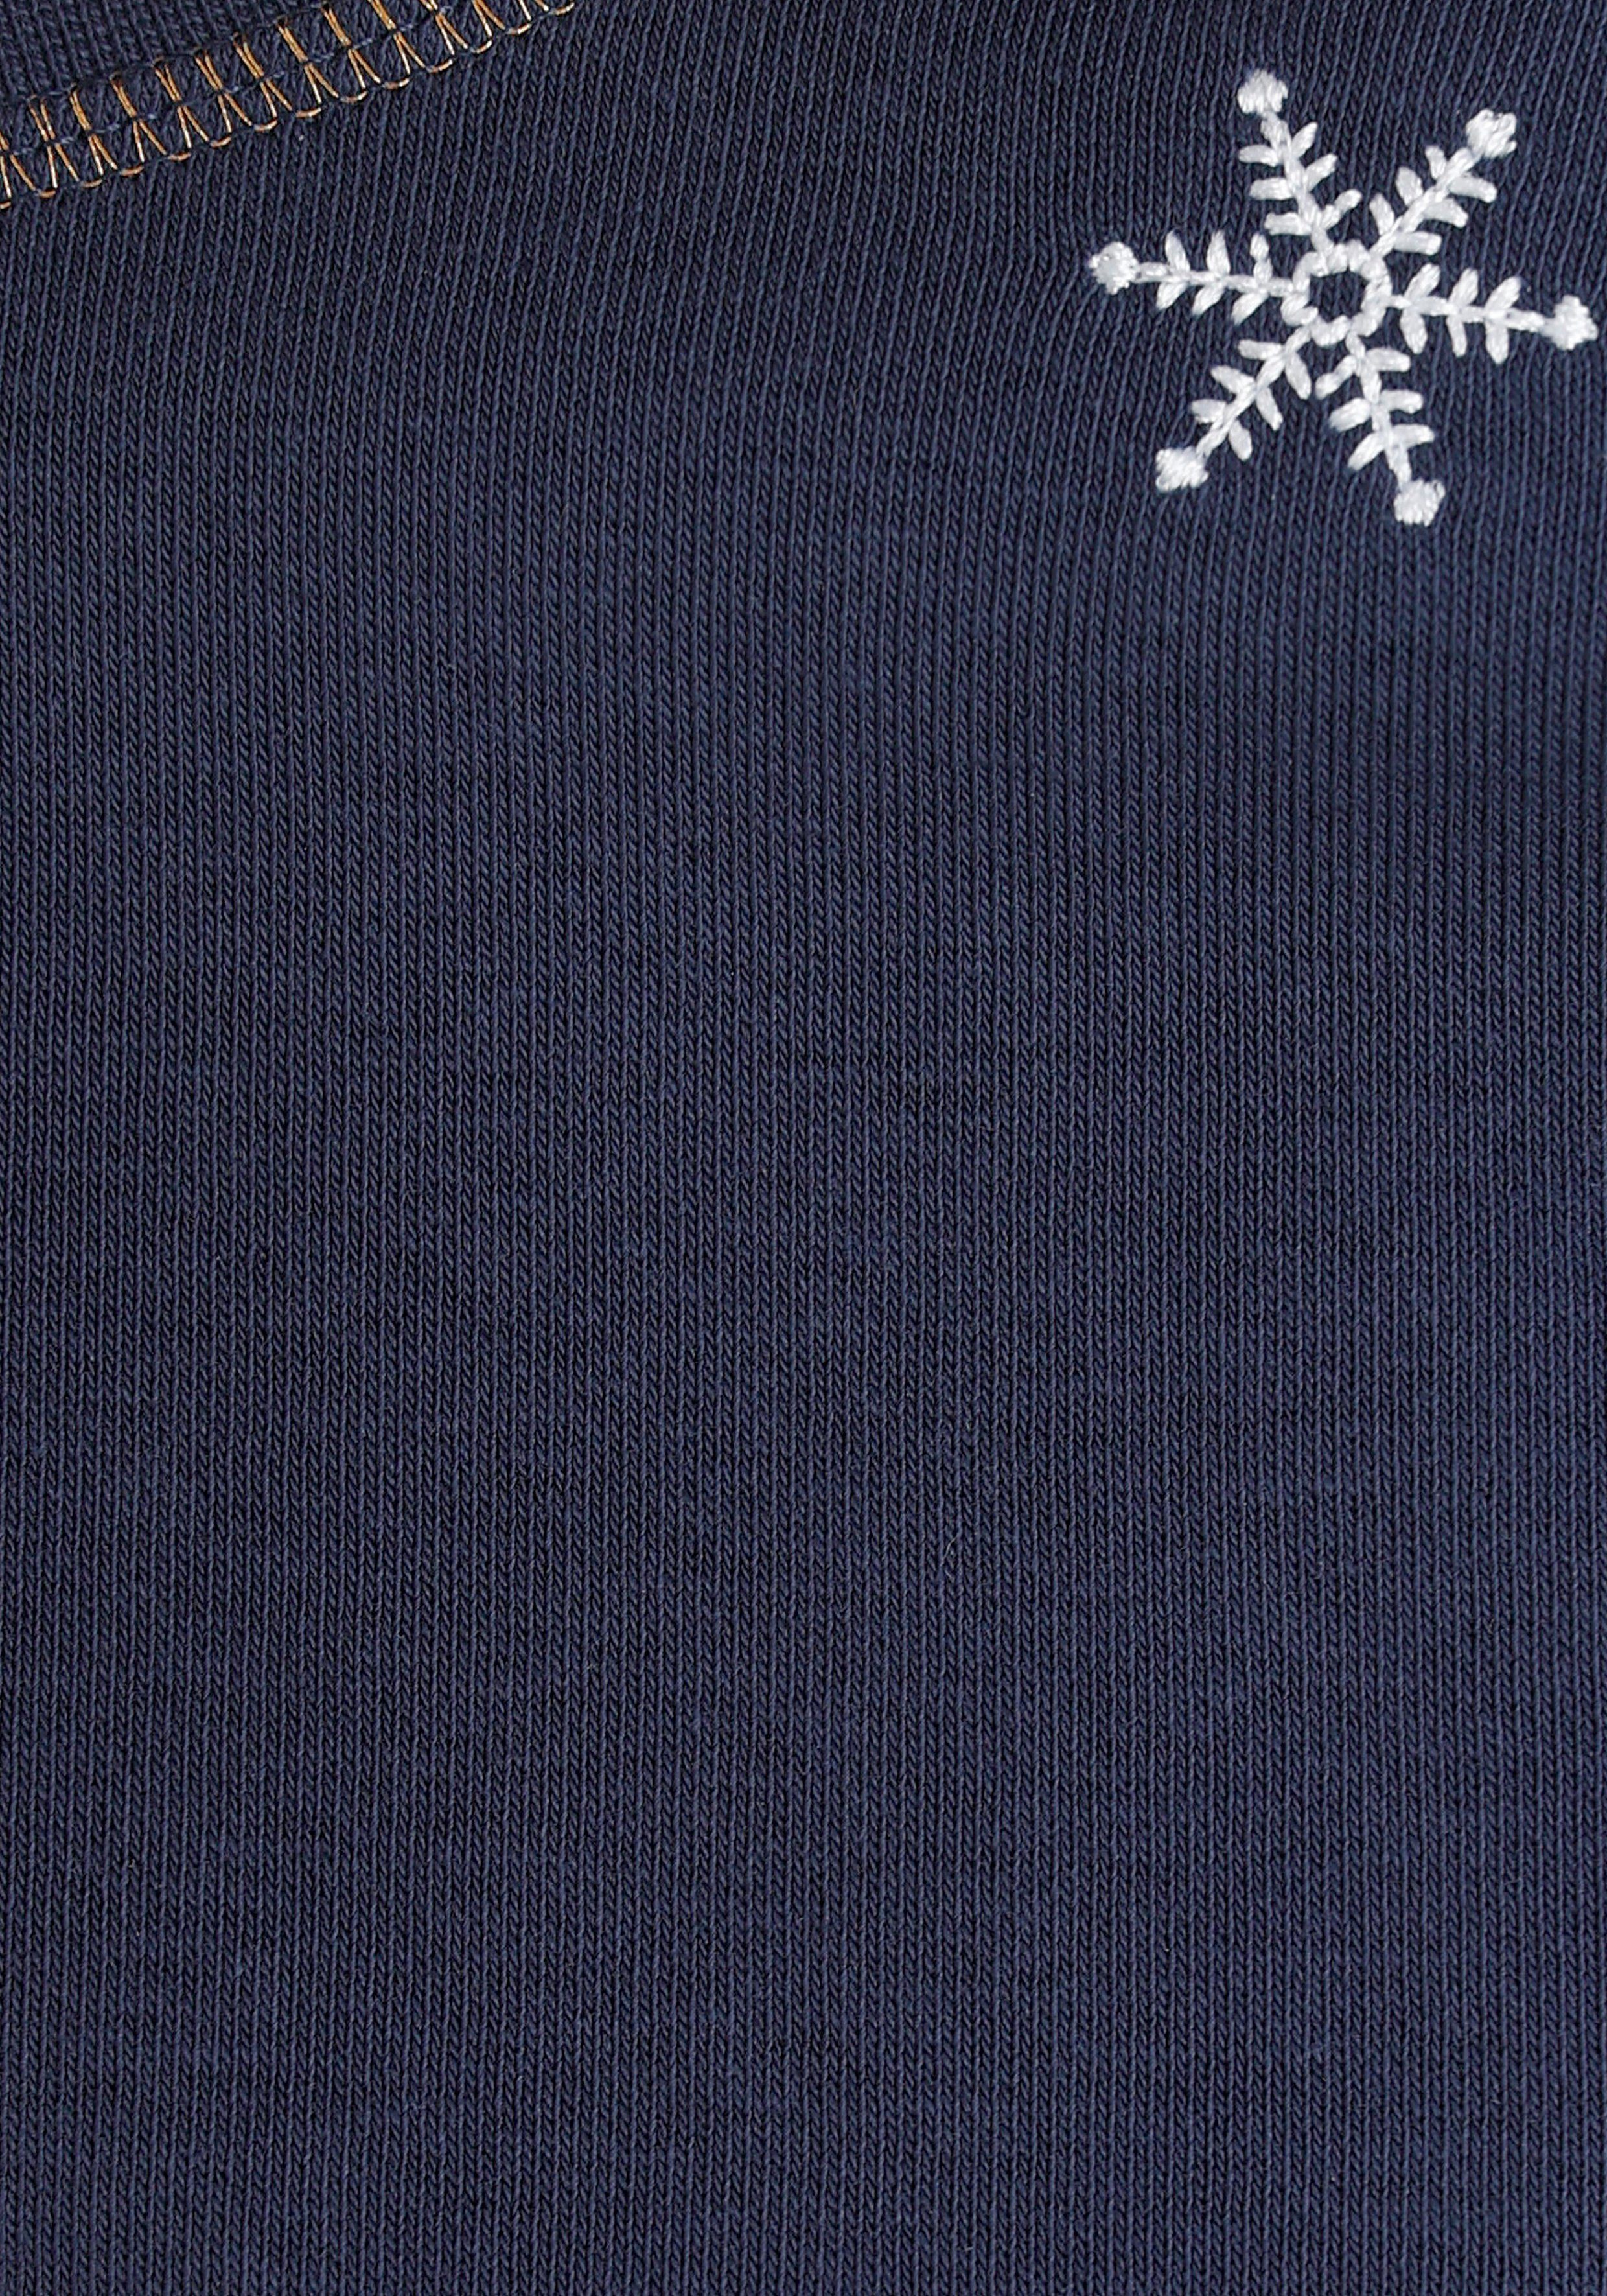 Schneeflocken - MARKE! edel bestickten NEUE DELMAO Sweatshirt mit